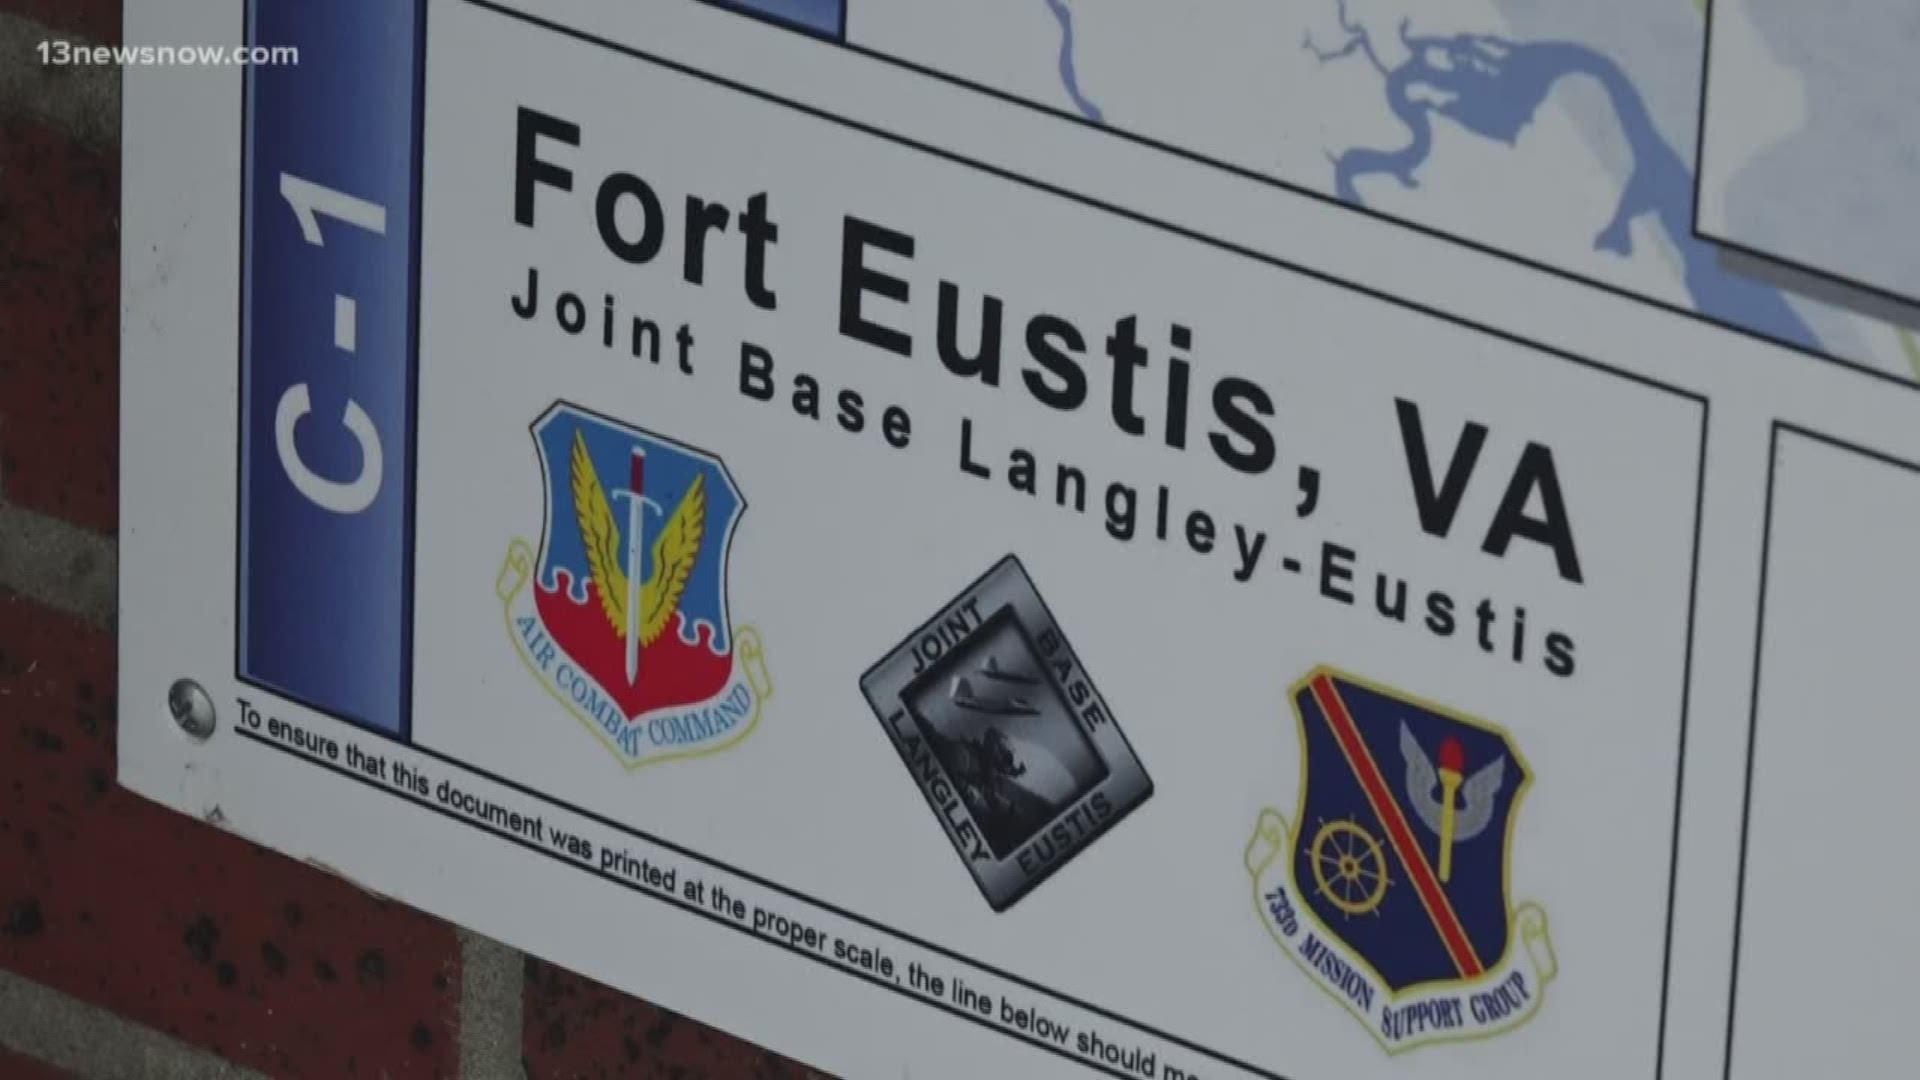 Fort Eustis Finance Office